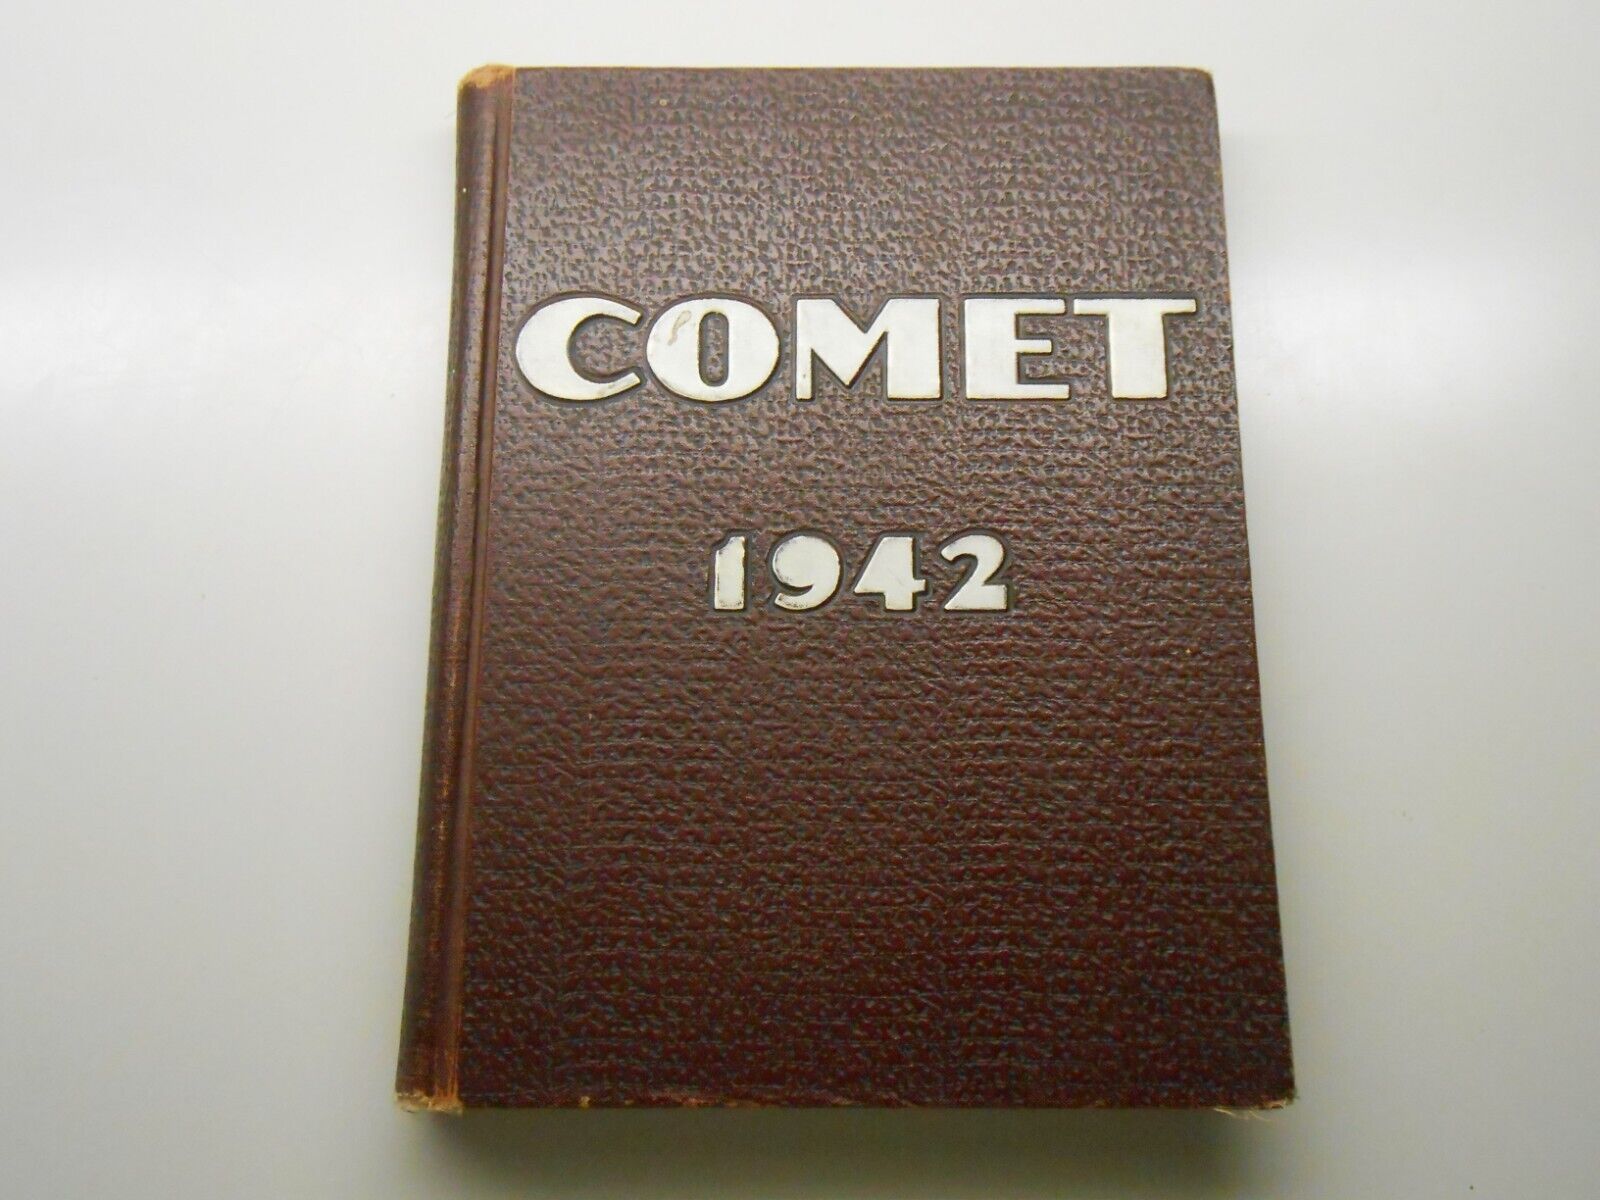 1942 Comet Austin High School Yearbook Austin Texas